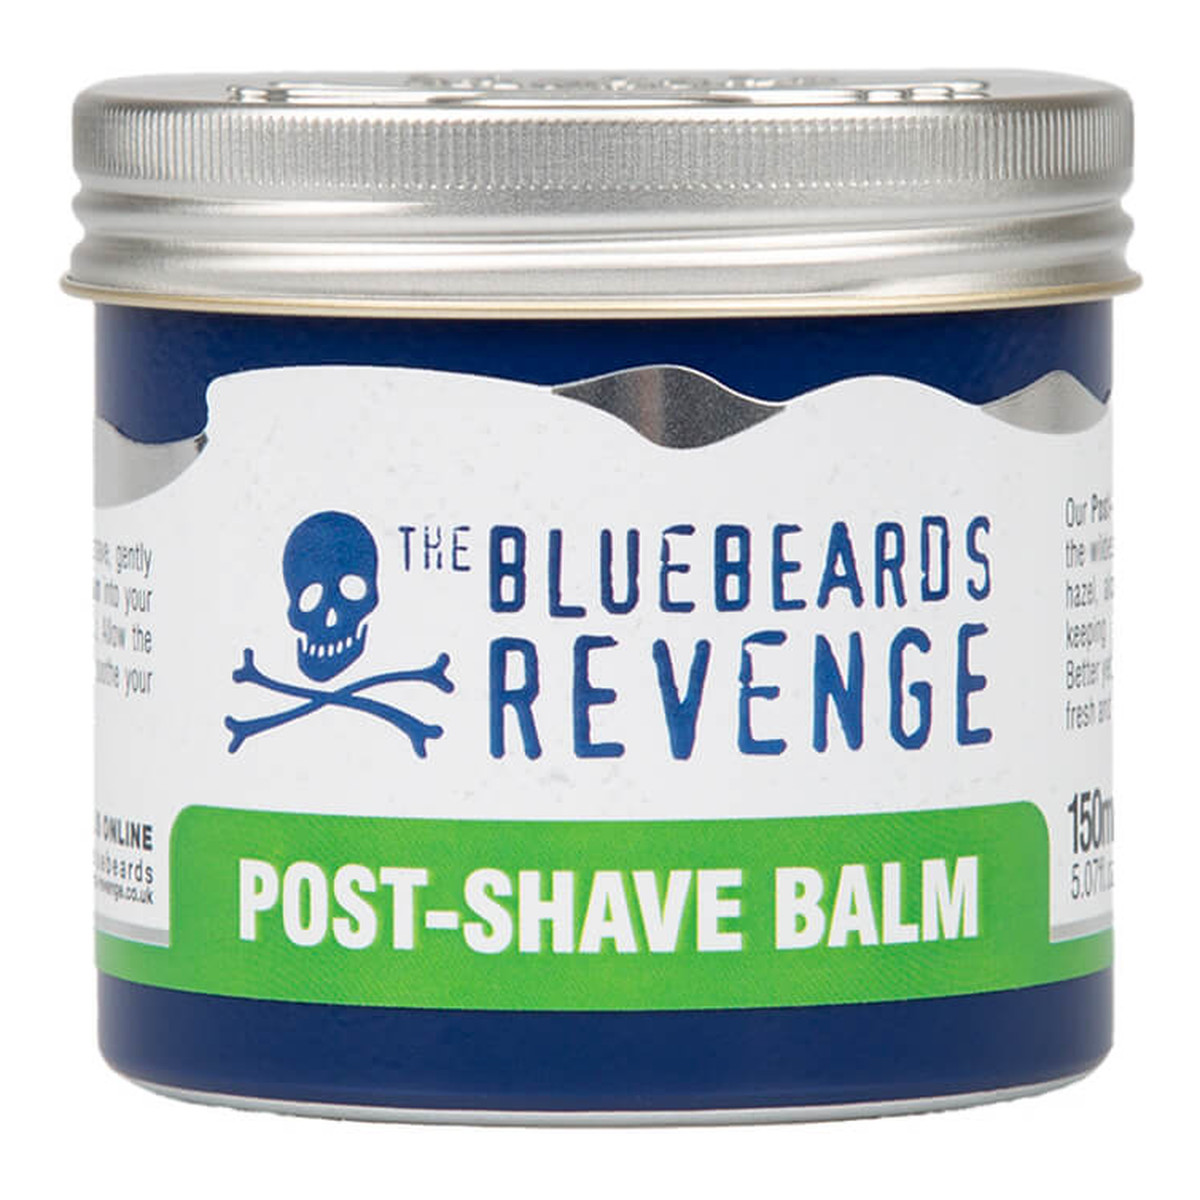 The Bluebeards Revenge Post-Shave Balm kojący Balsam po goleniu dla mężczyzn 150ml